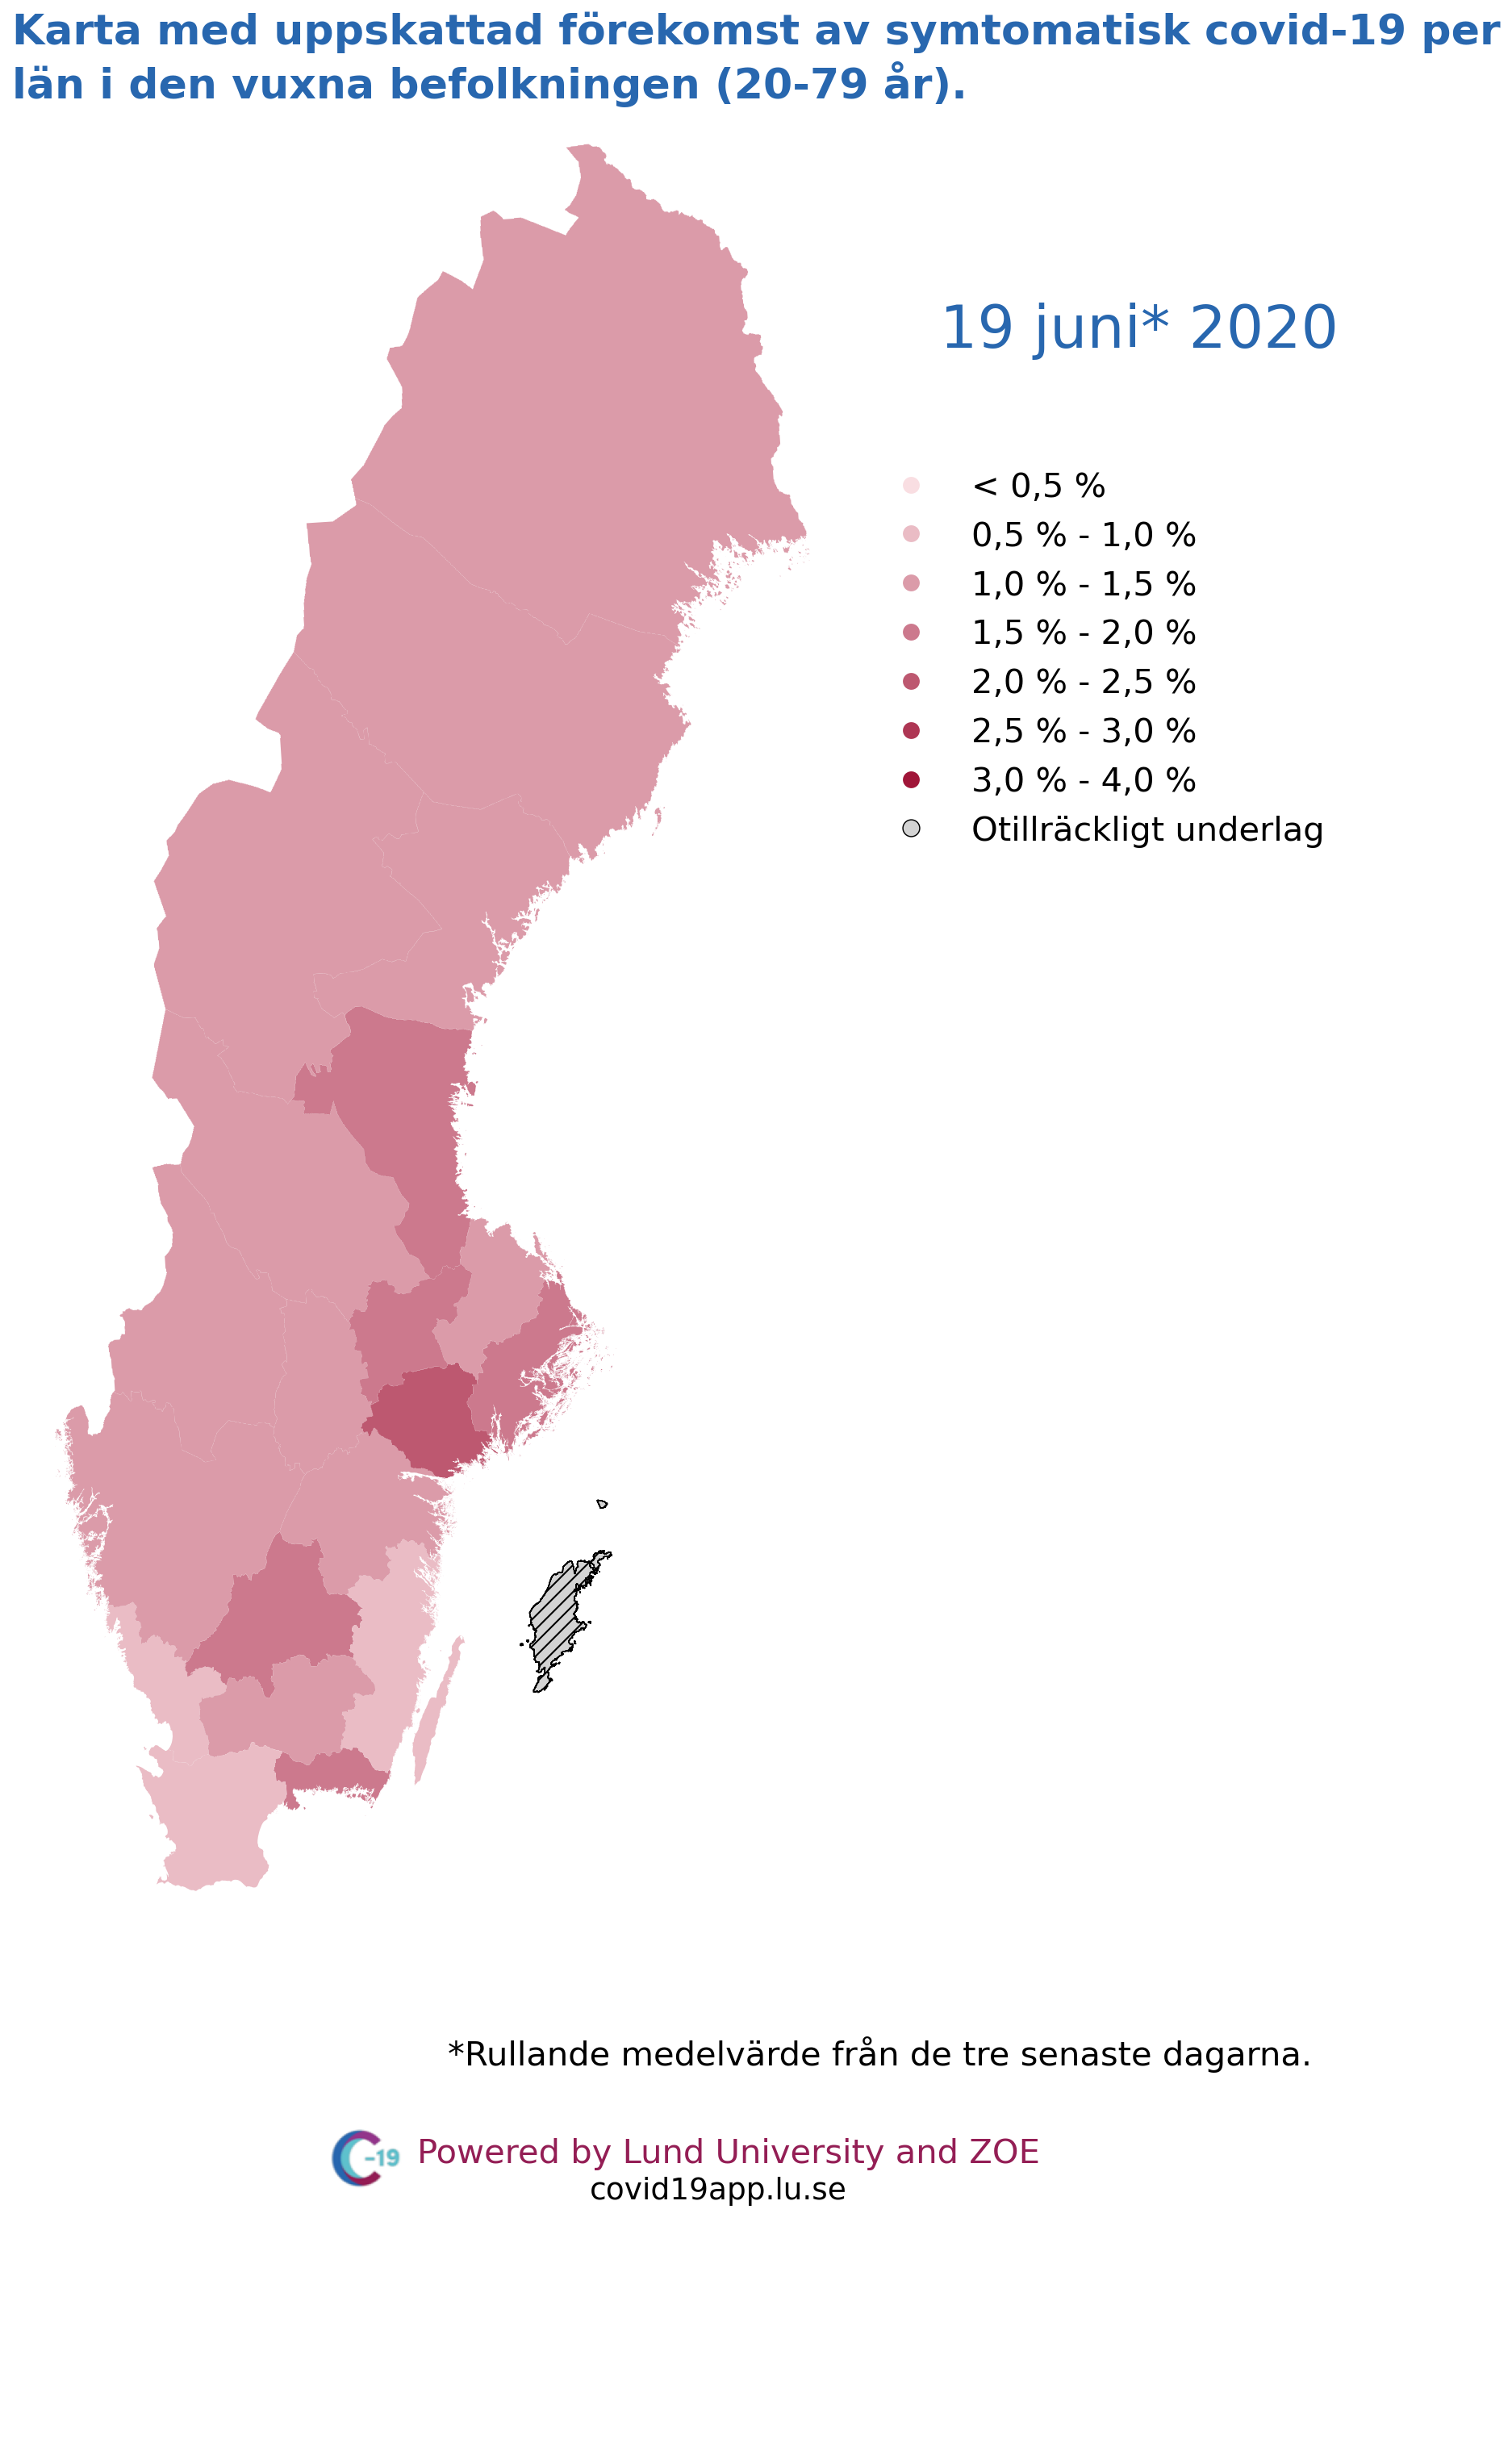 Karta med uppskattad förekomst av symtomatisk covid-19 per län i den vuxna befolkningen (20-79 år), 19 juni 2020.